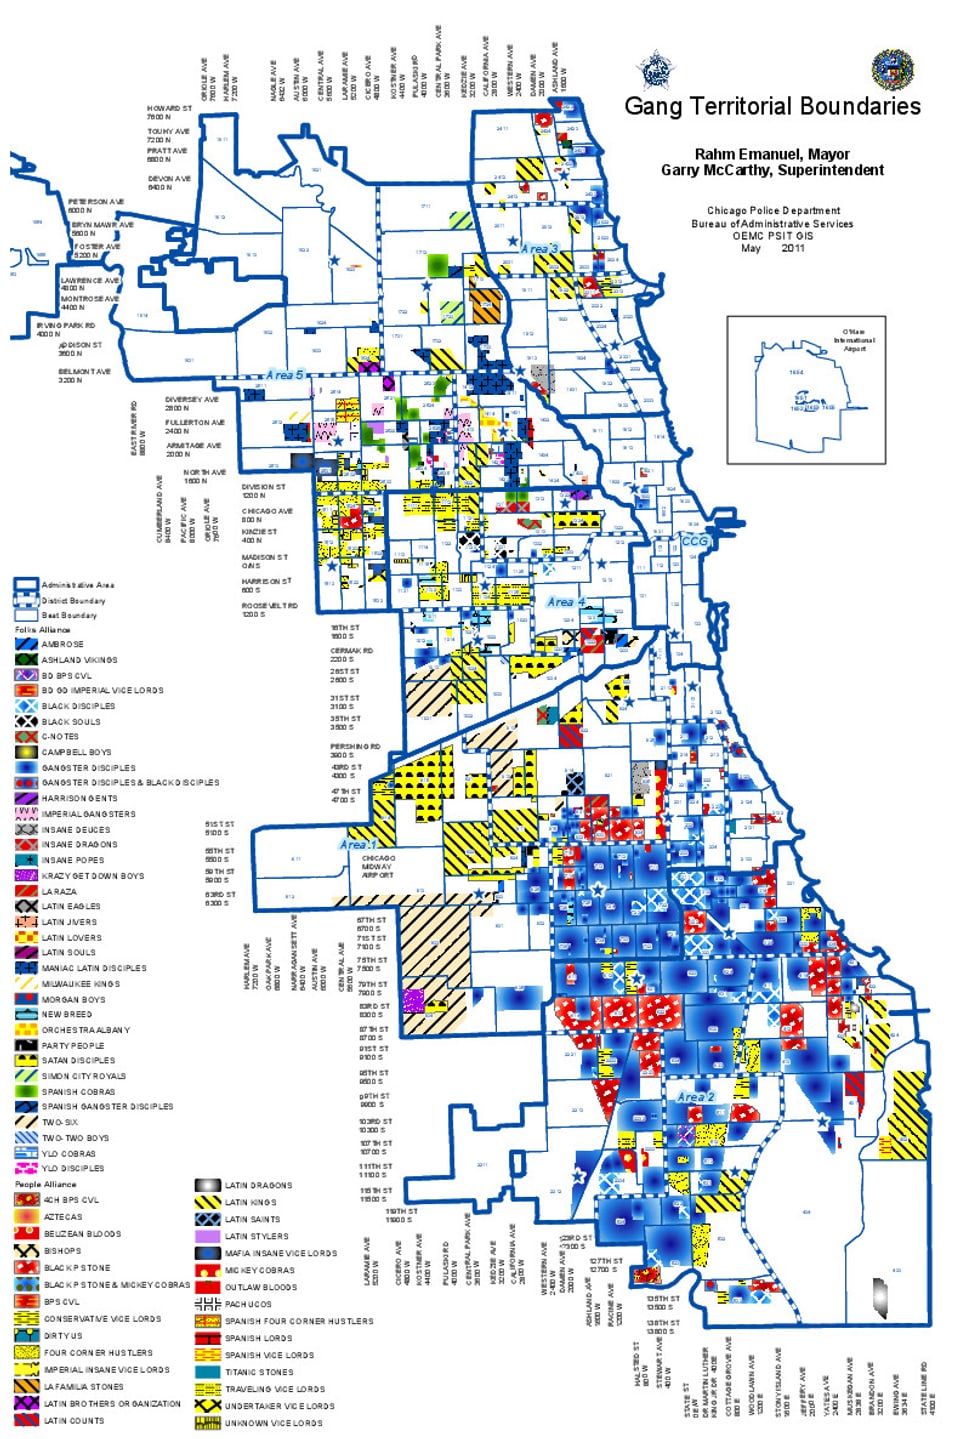 Diese Karte zeigt, welche Gangs in Chicago im Jahr 2010 in welchen Bezirken aktiv waren.